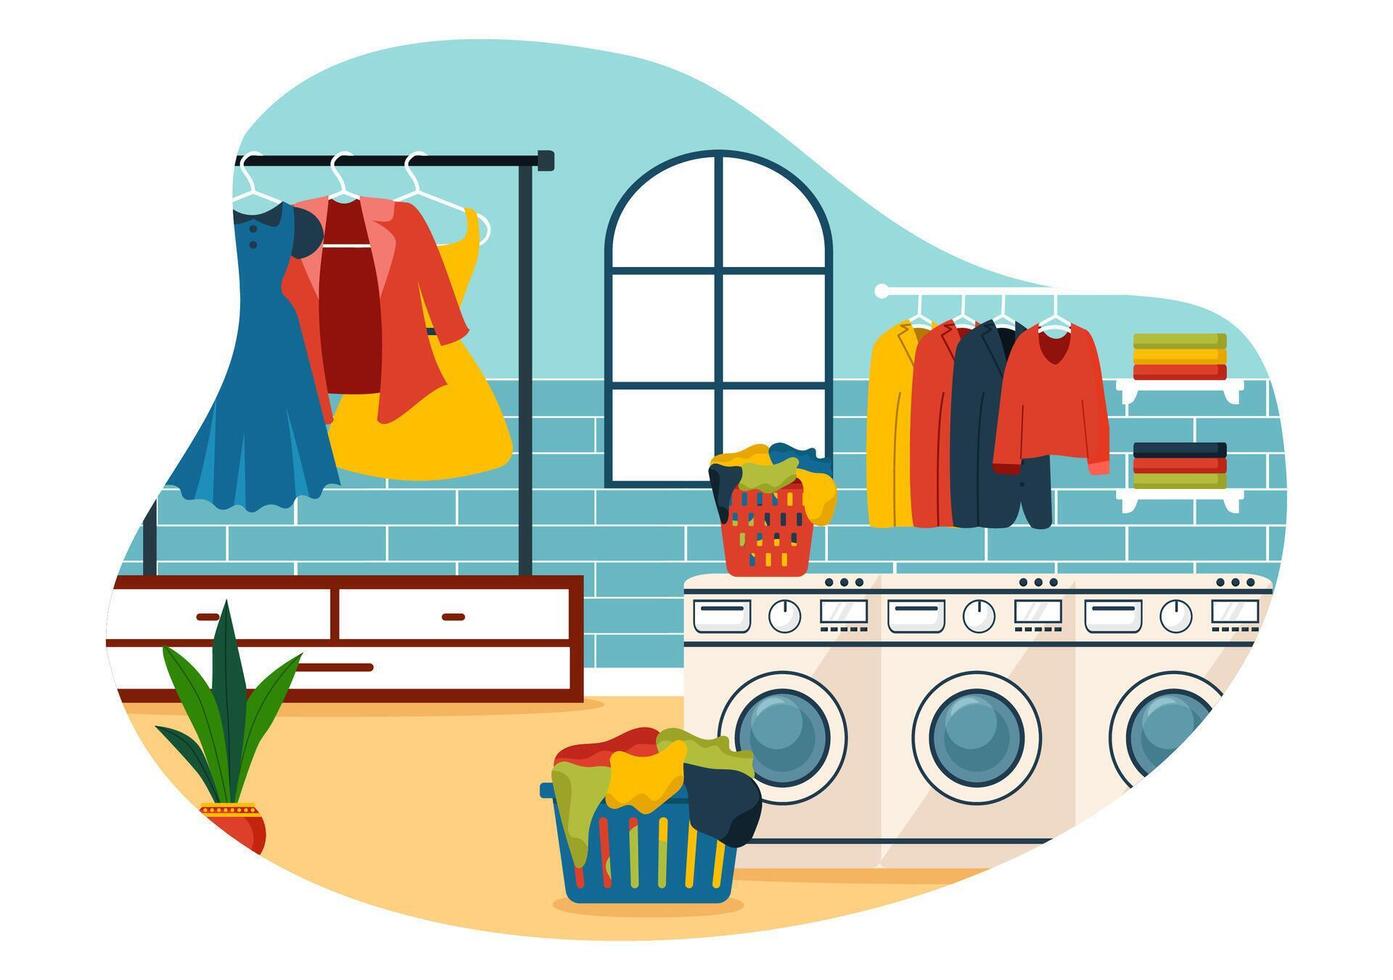 sec nettoyage boutique un service illustration avec la lessive Machines, séchoirs et blanchisserie pour nettoyer Vêtements dans plat dessin animé Contexte conception vecteur